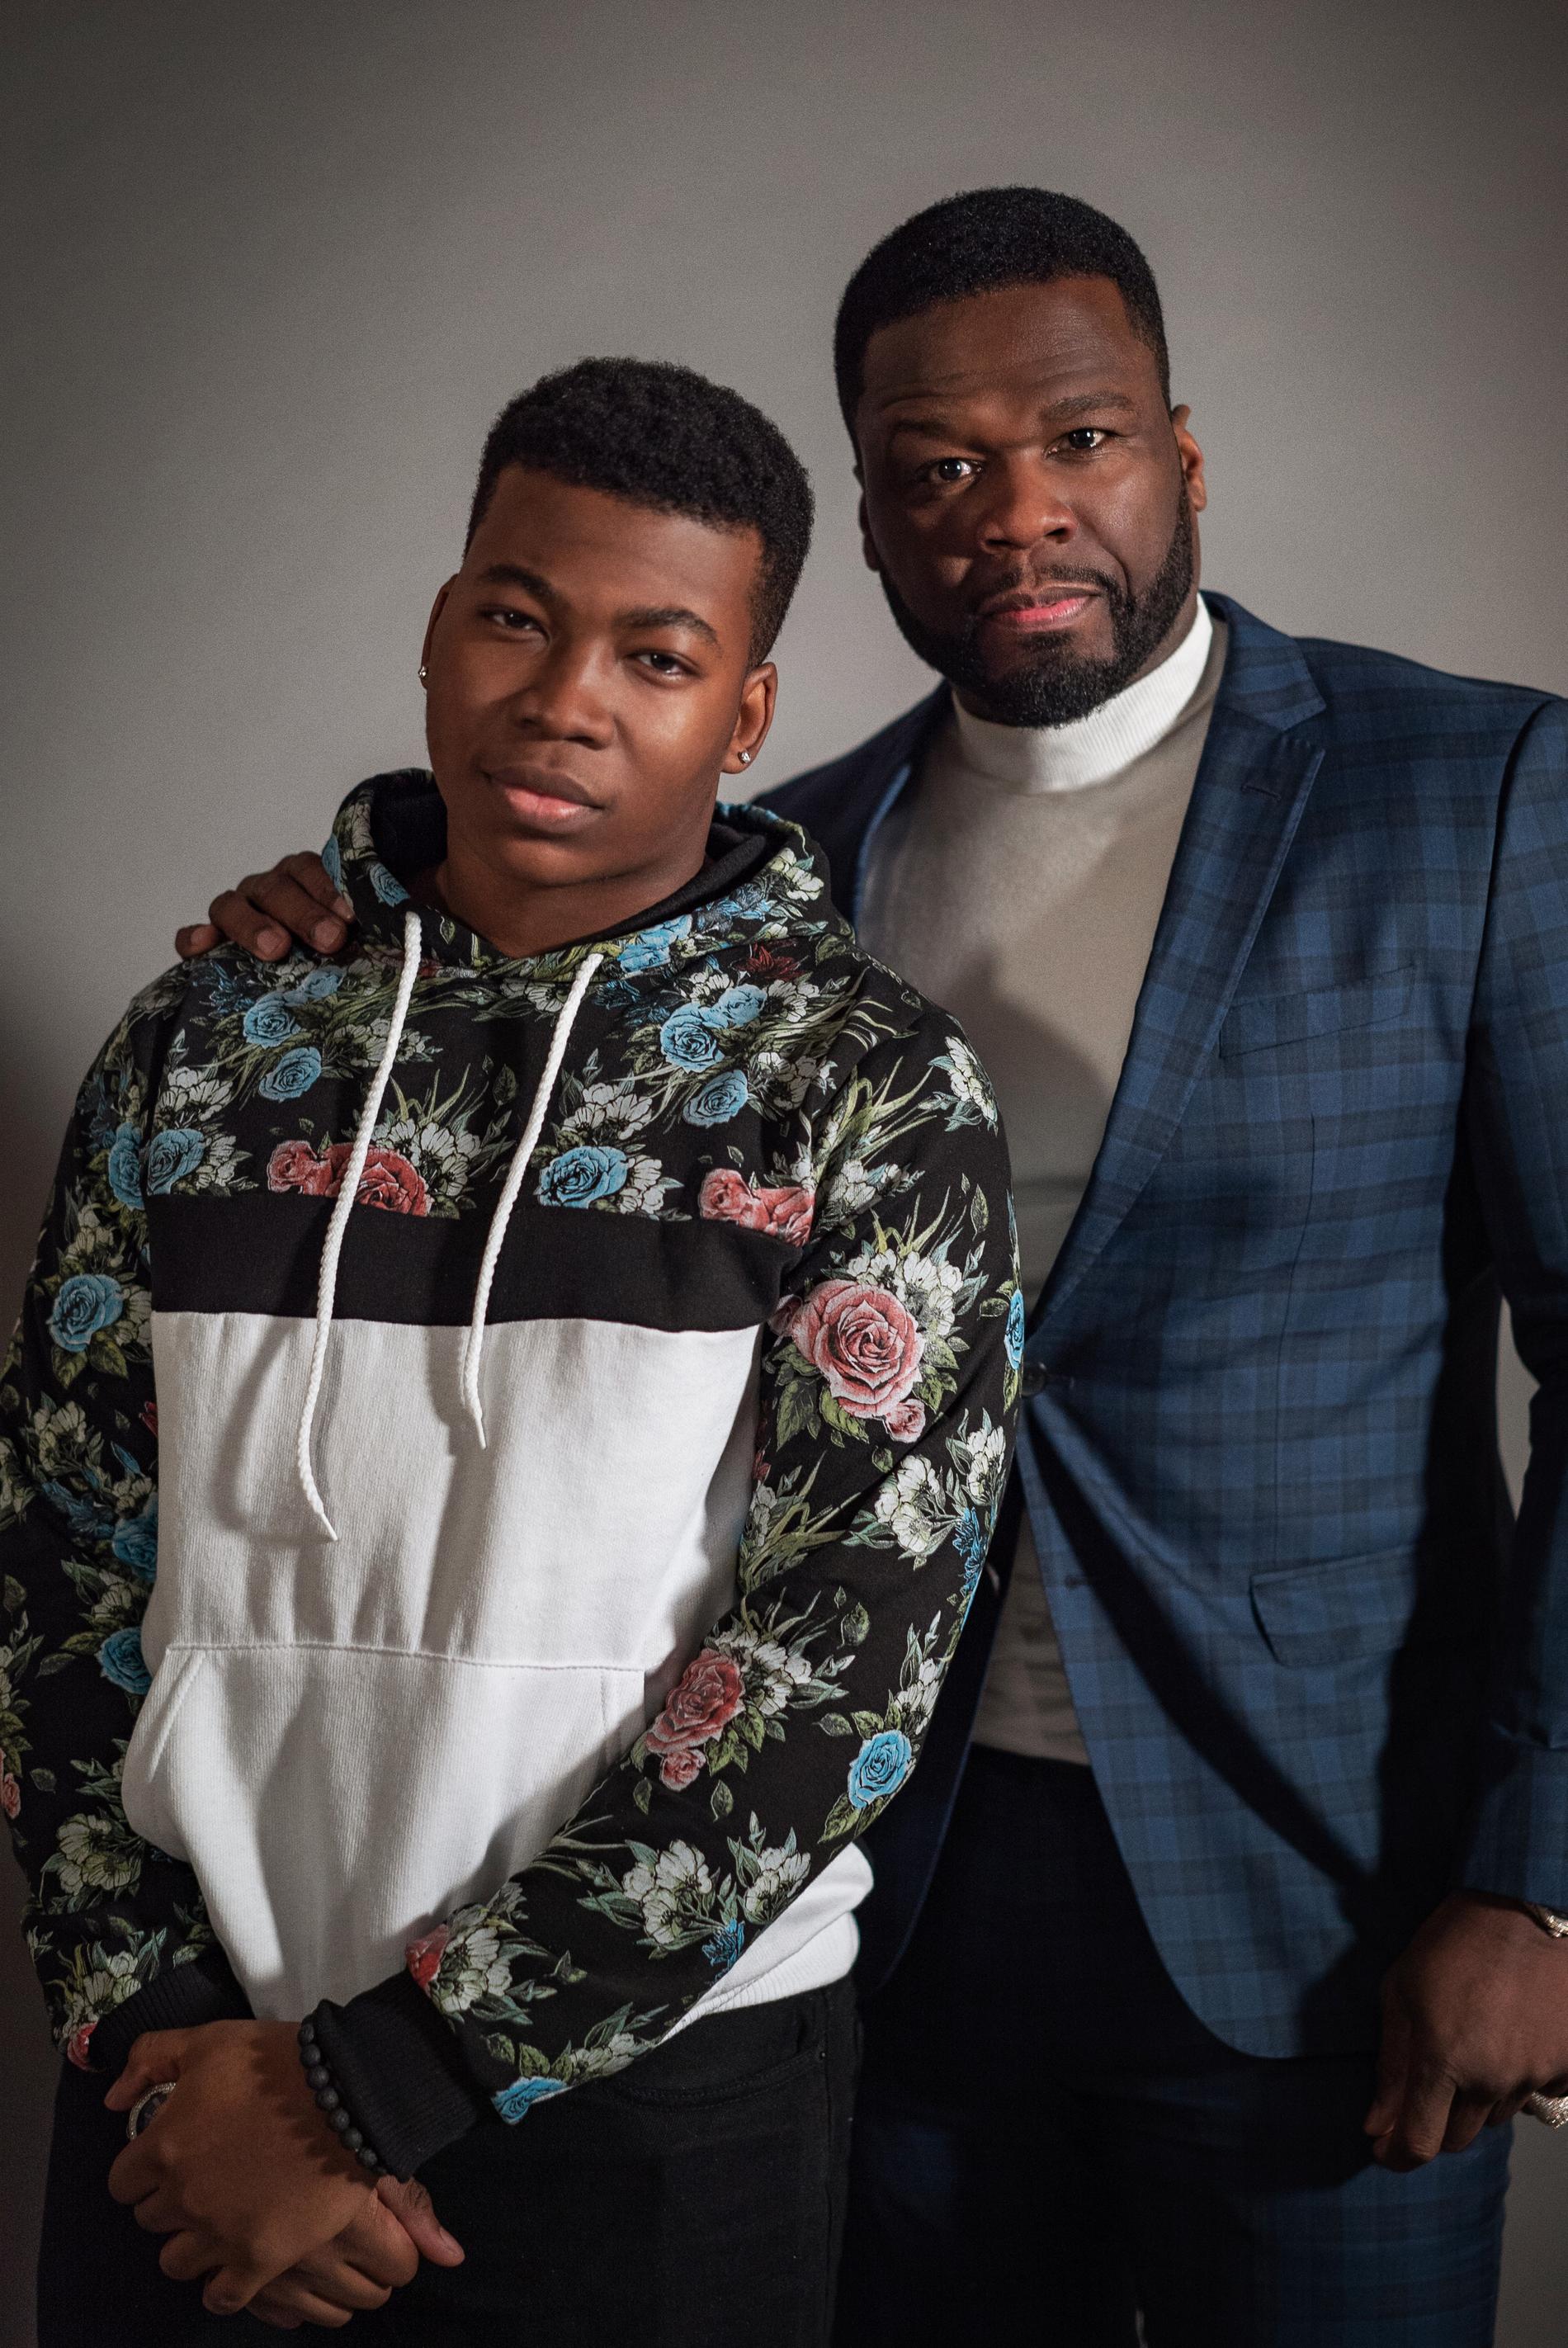 Mekai Curtis med Curtis "50 Cent" Jackson. Båda spelar Kanan Stark i olika installationer av tv-serien "Power". Pressbild.